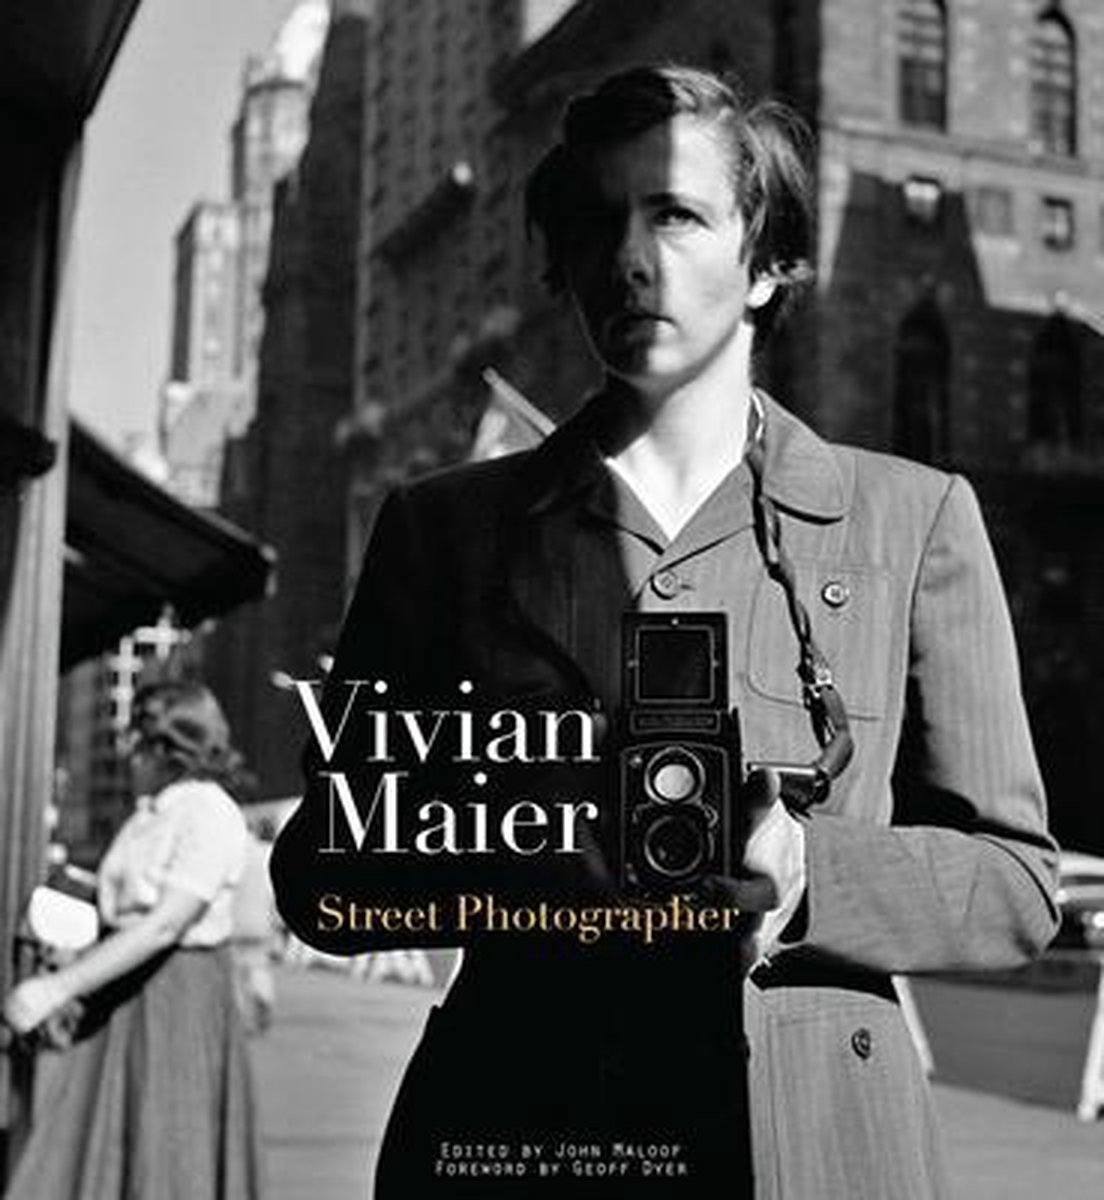 Vivian Maier: Street Photographer - Vivian Maier